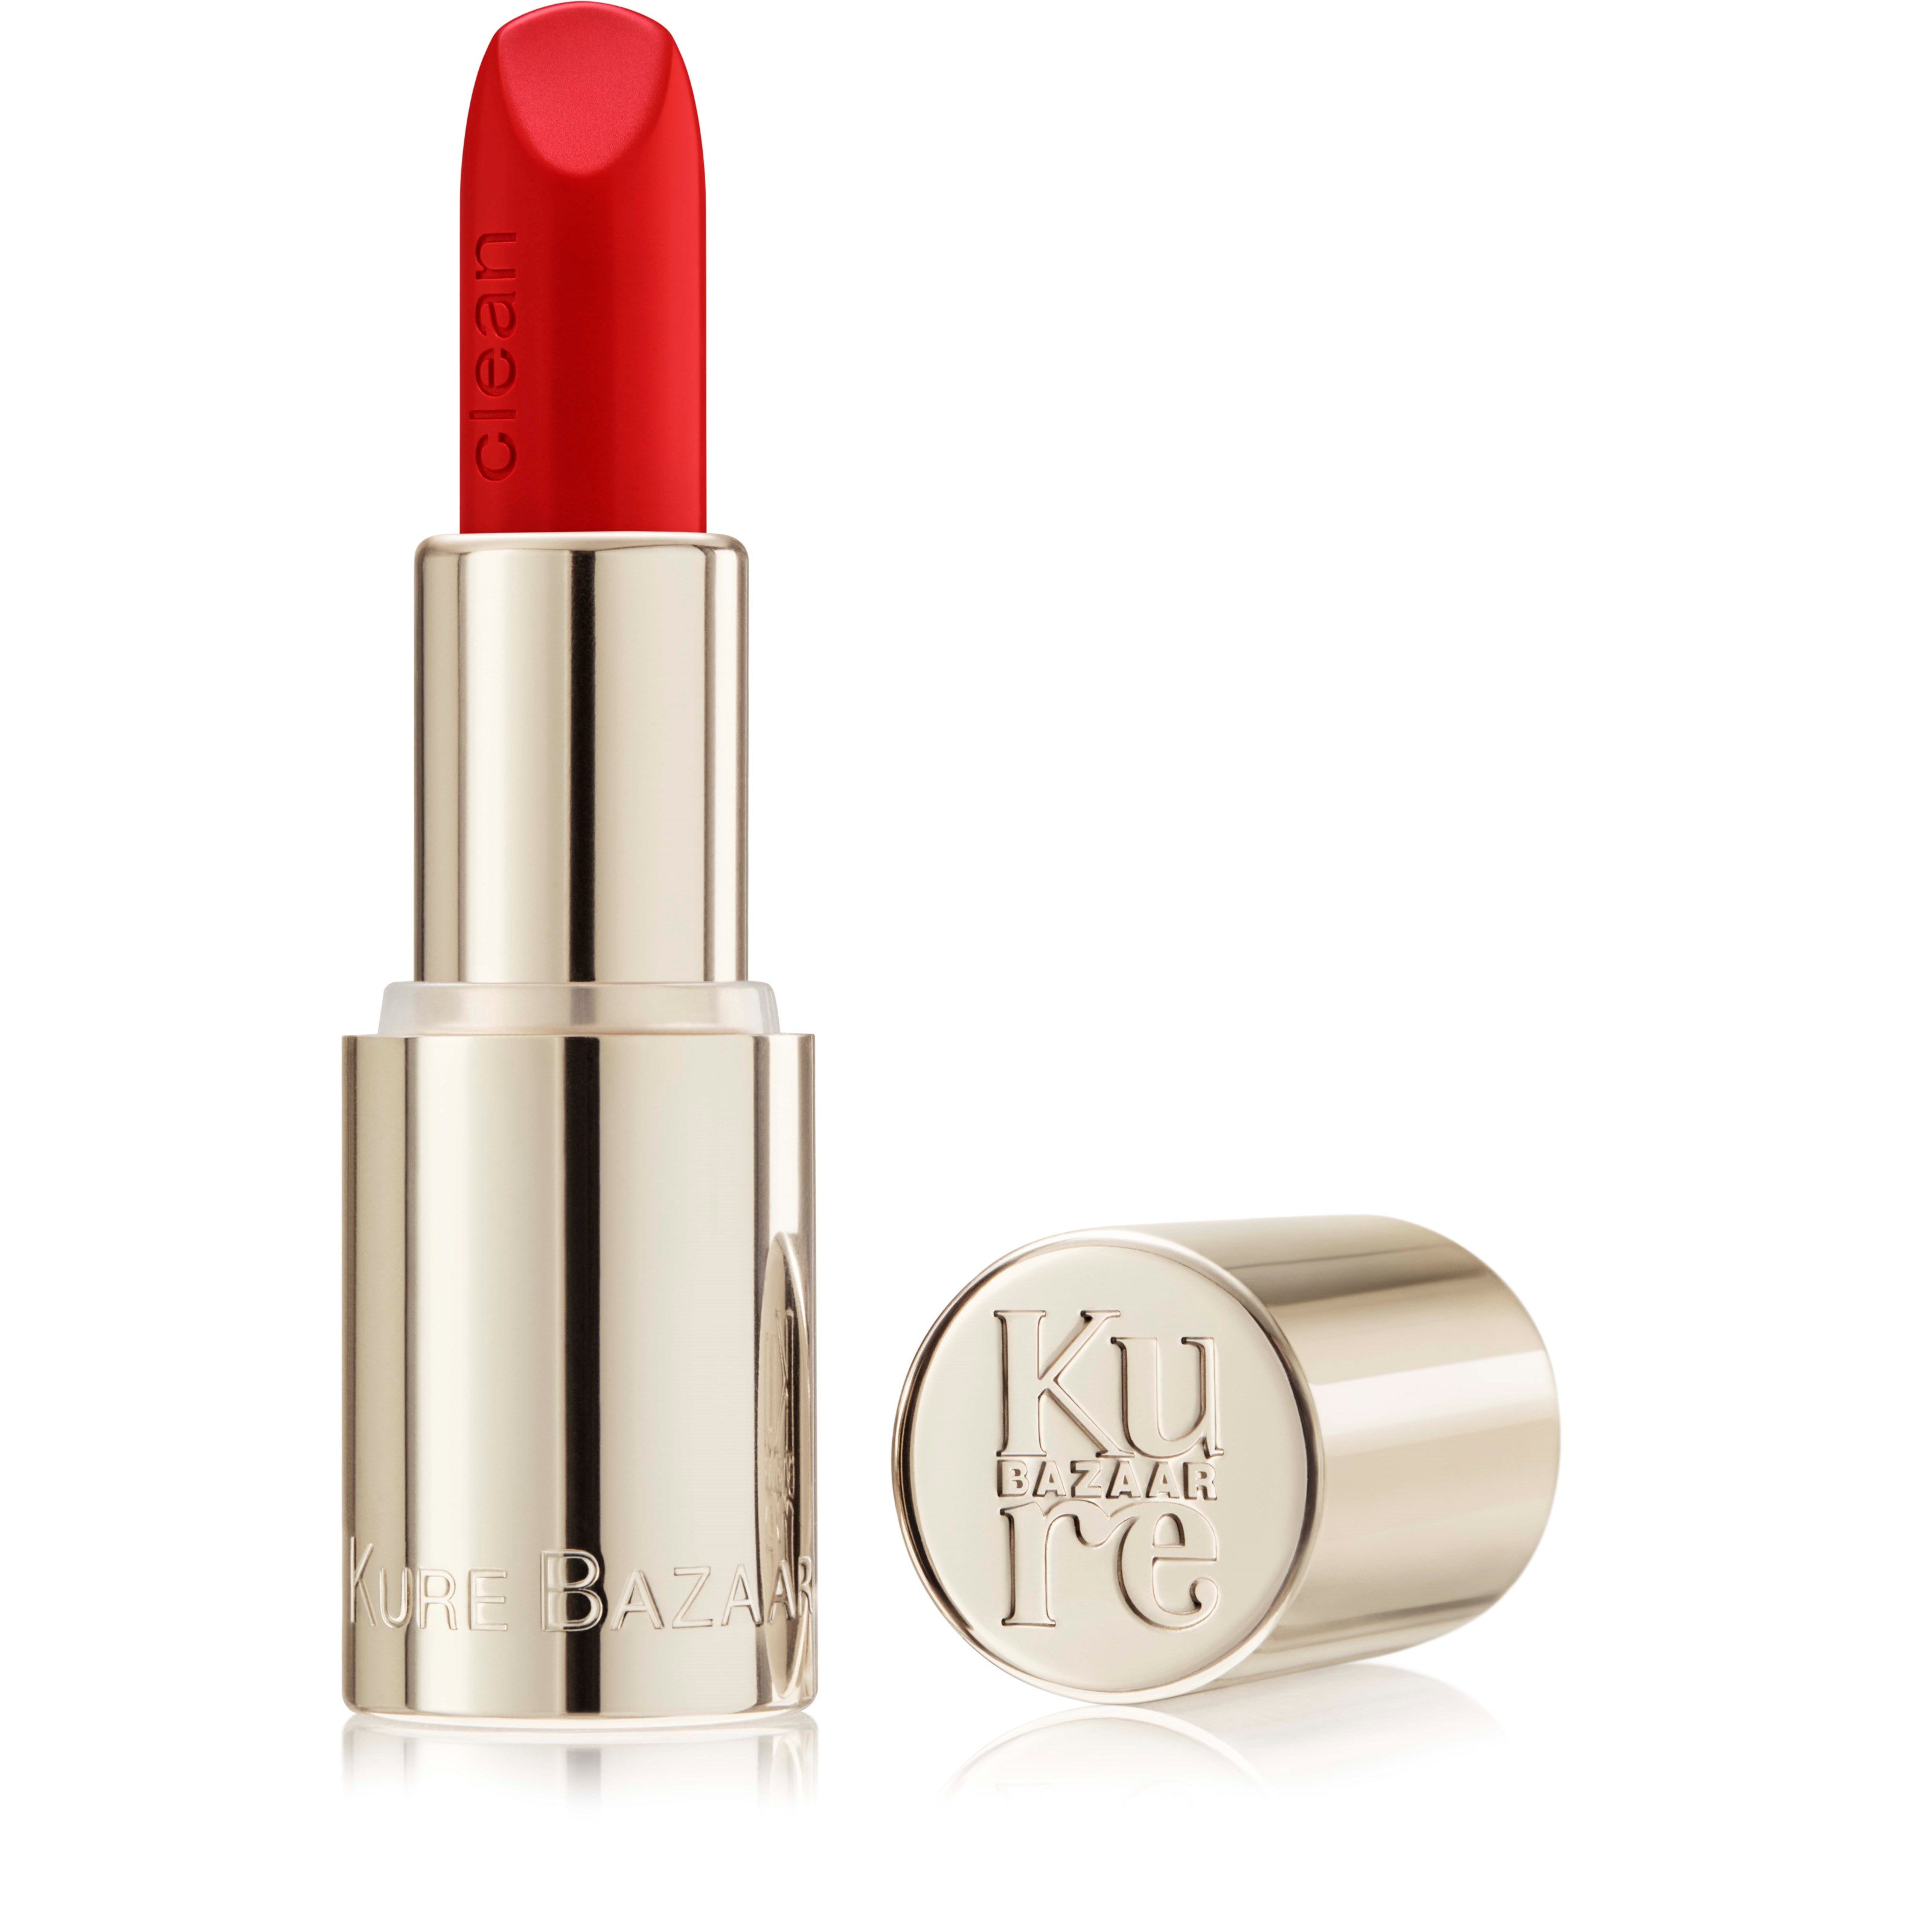 Läs mer om Kure Bazaar Matte lipstick Lipstick